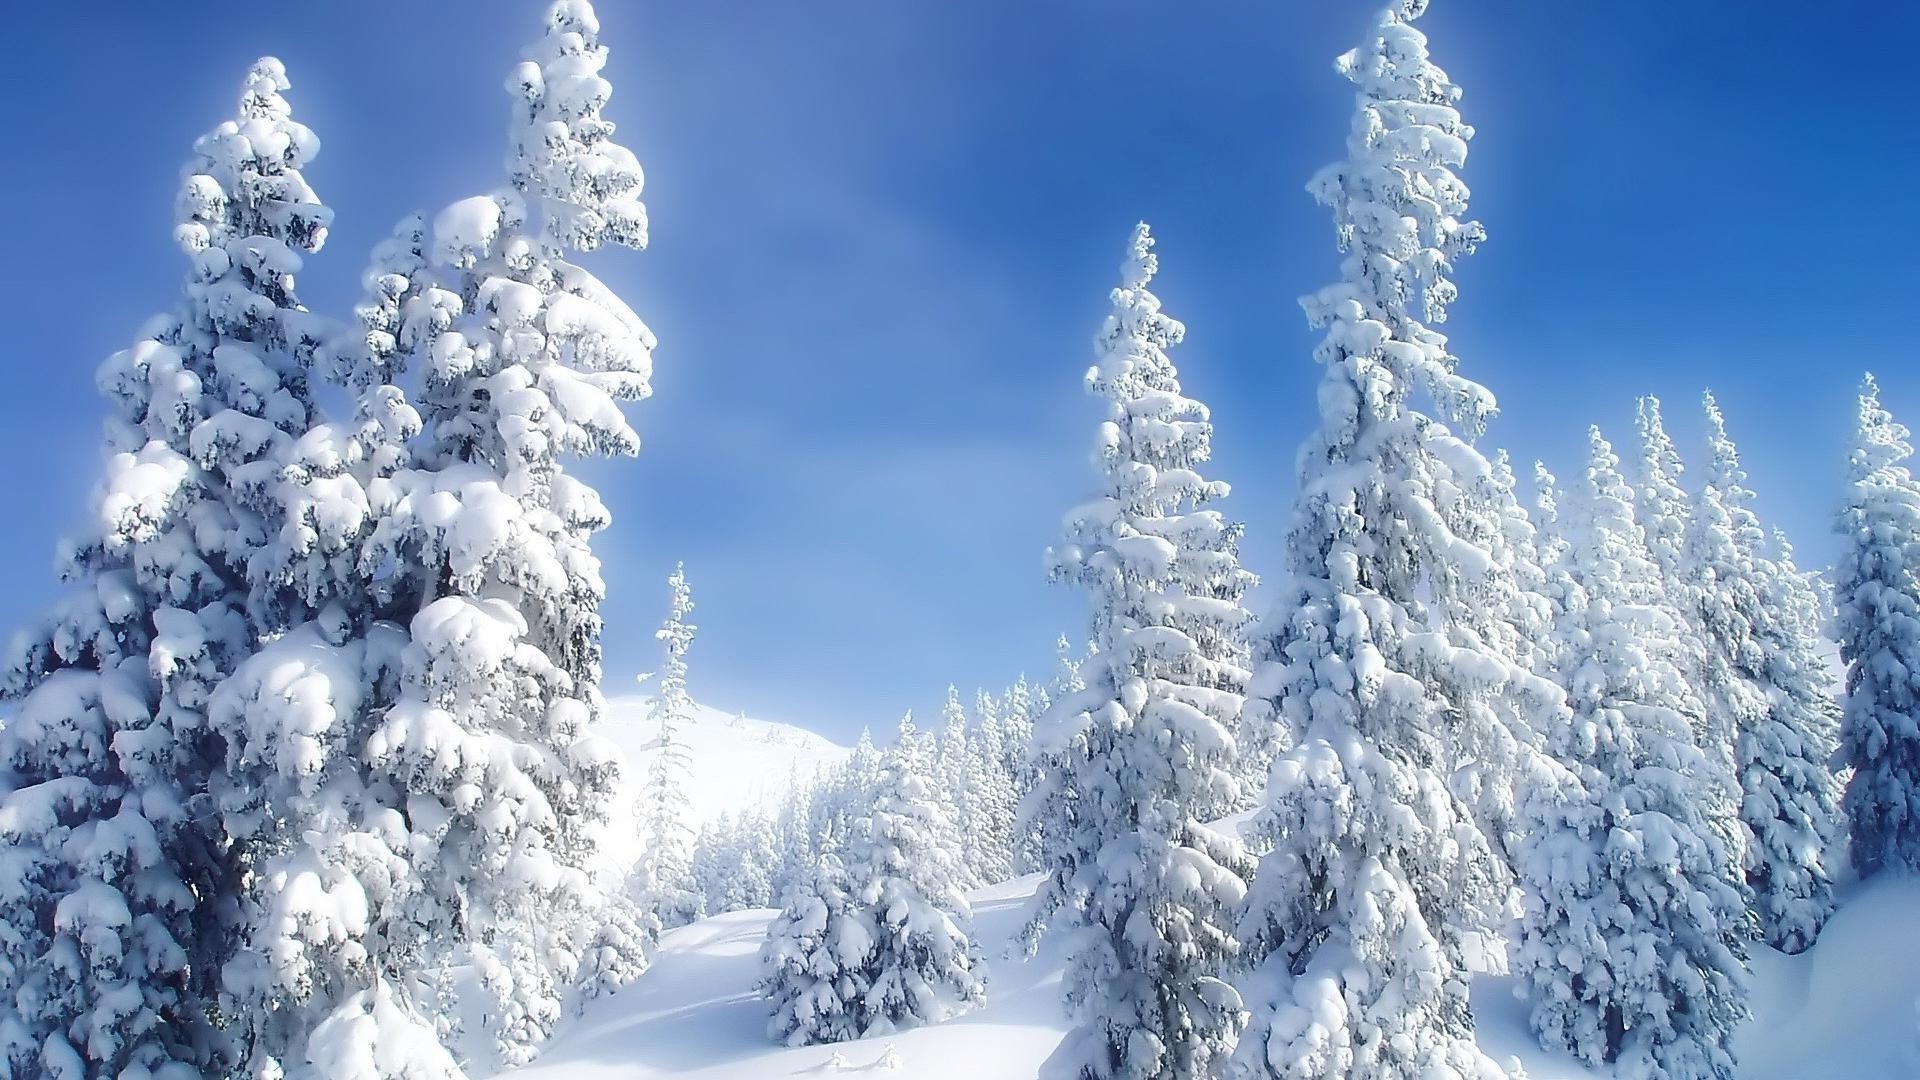 зима снег холодная мороз древесины лед замороженные снежное горы погода пихта сезон хорошую погоду эвергрин живописный